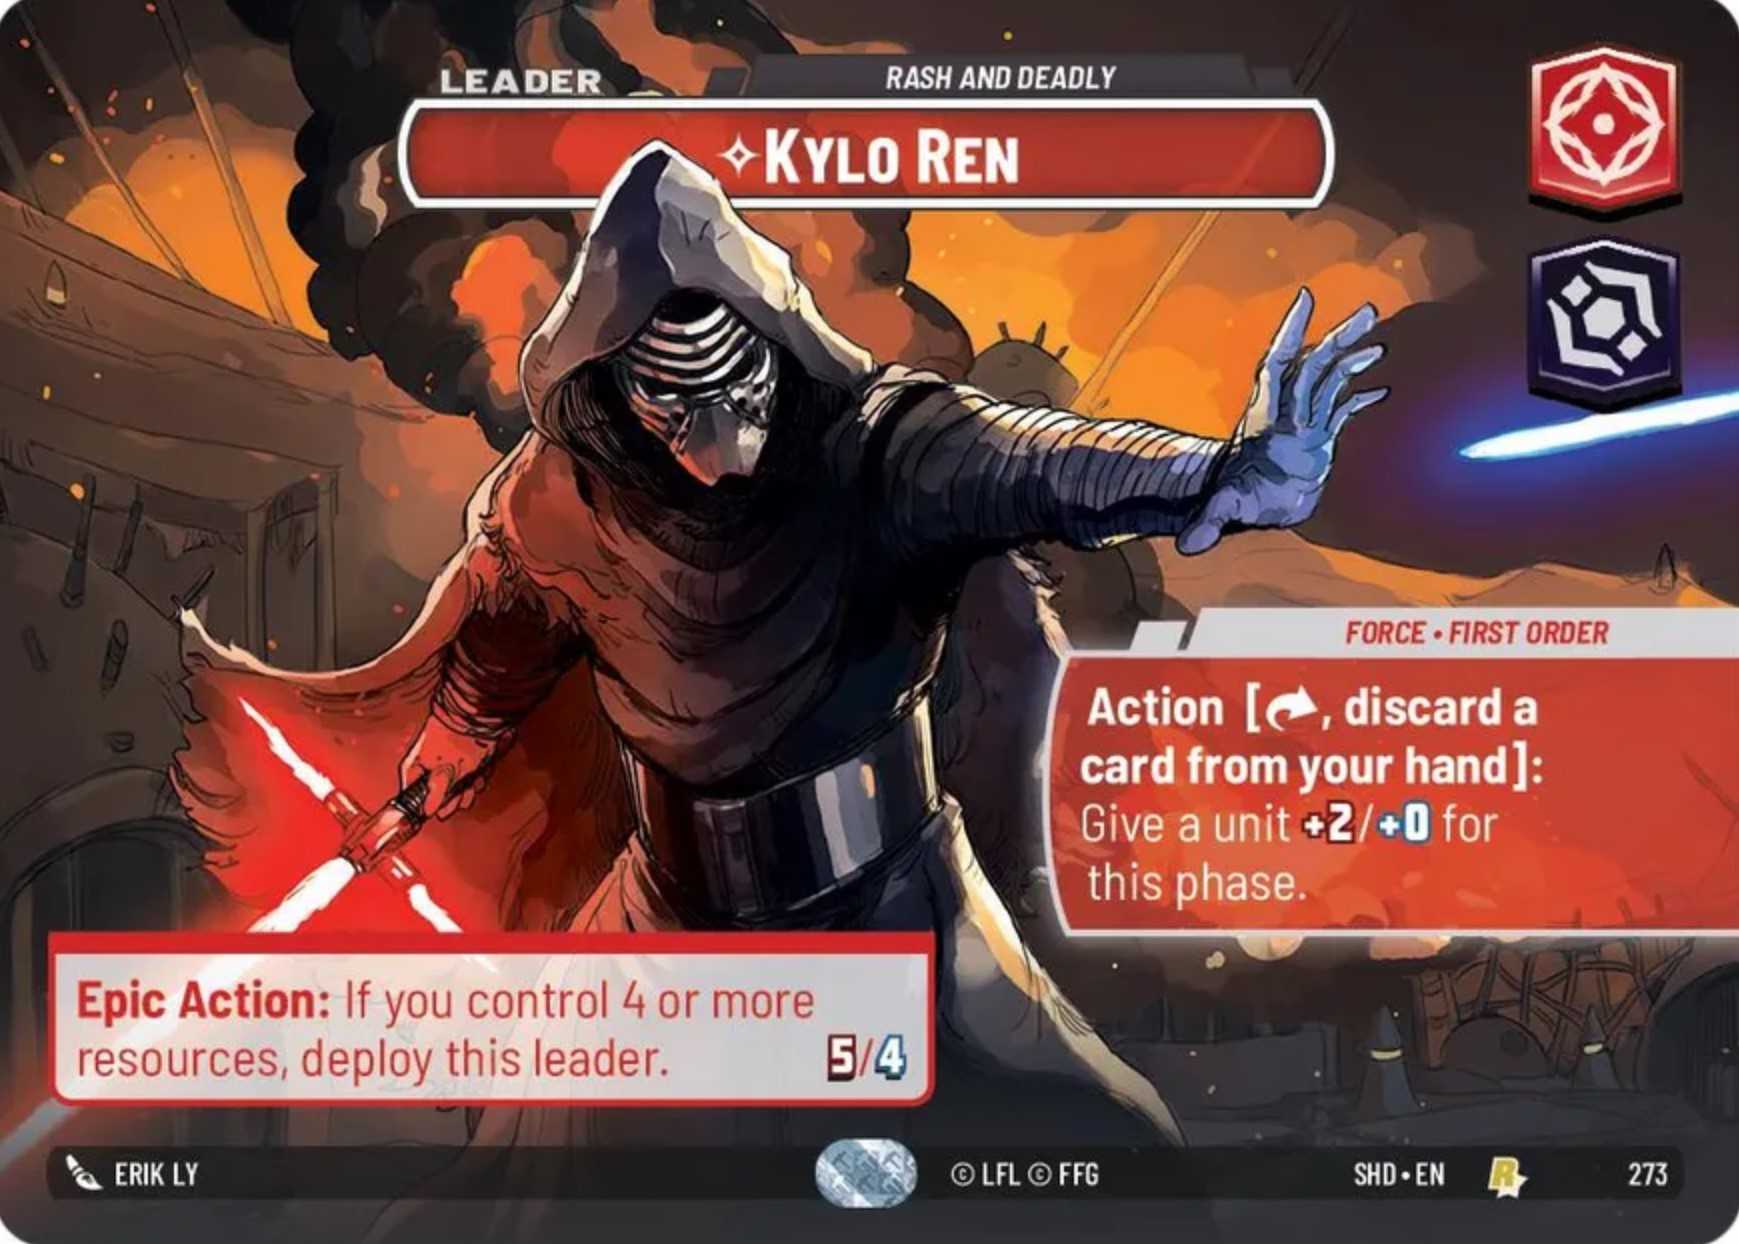 Kylo Ren Showcase card in Star Wars Unlimited